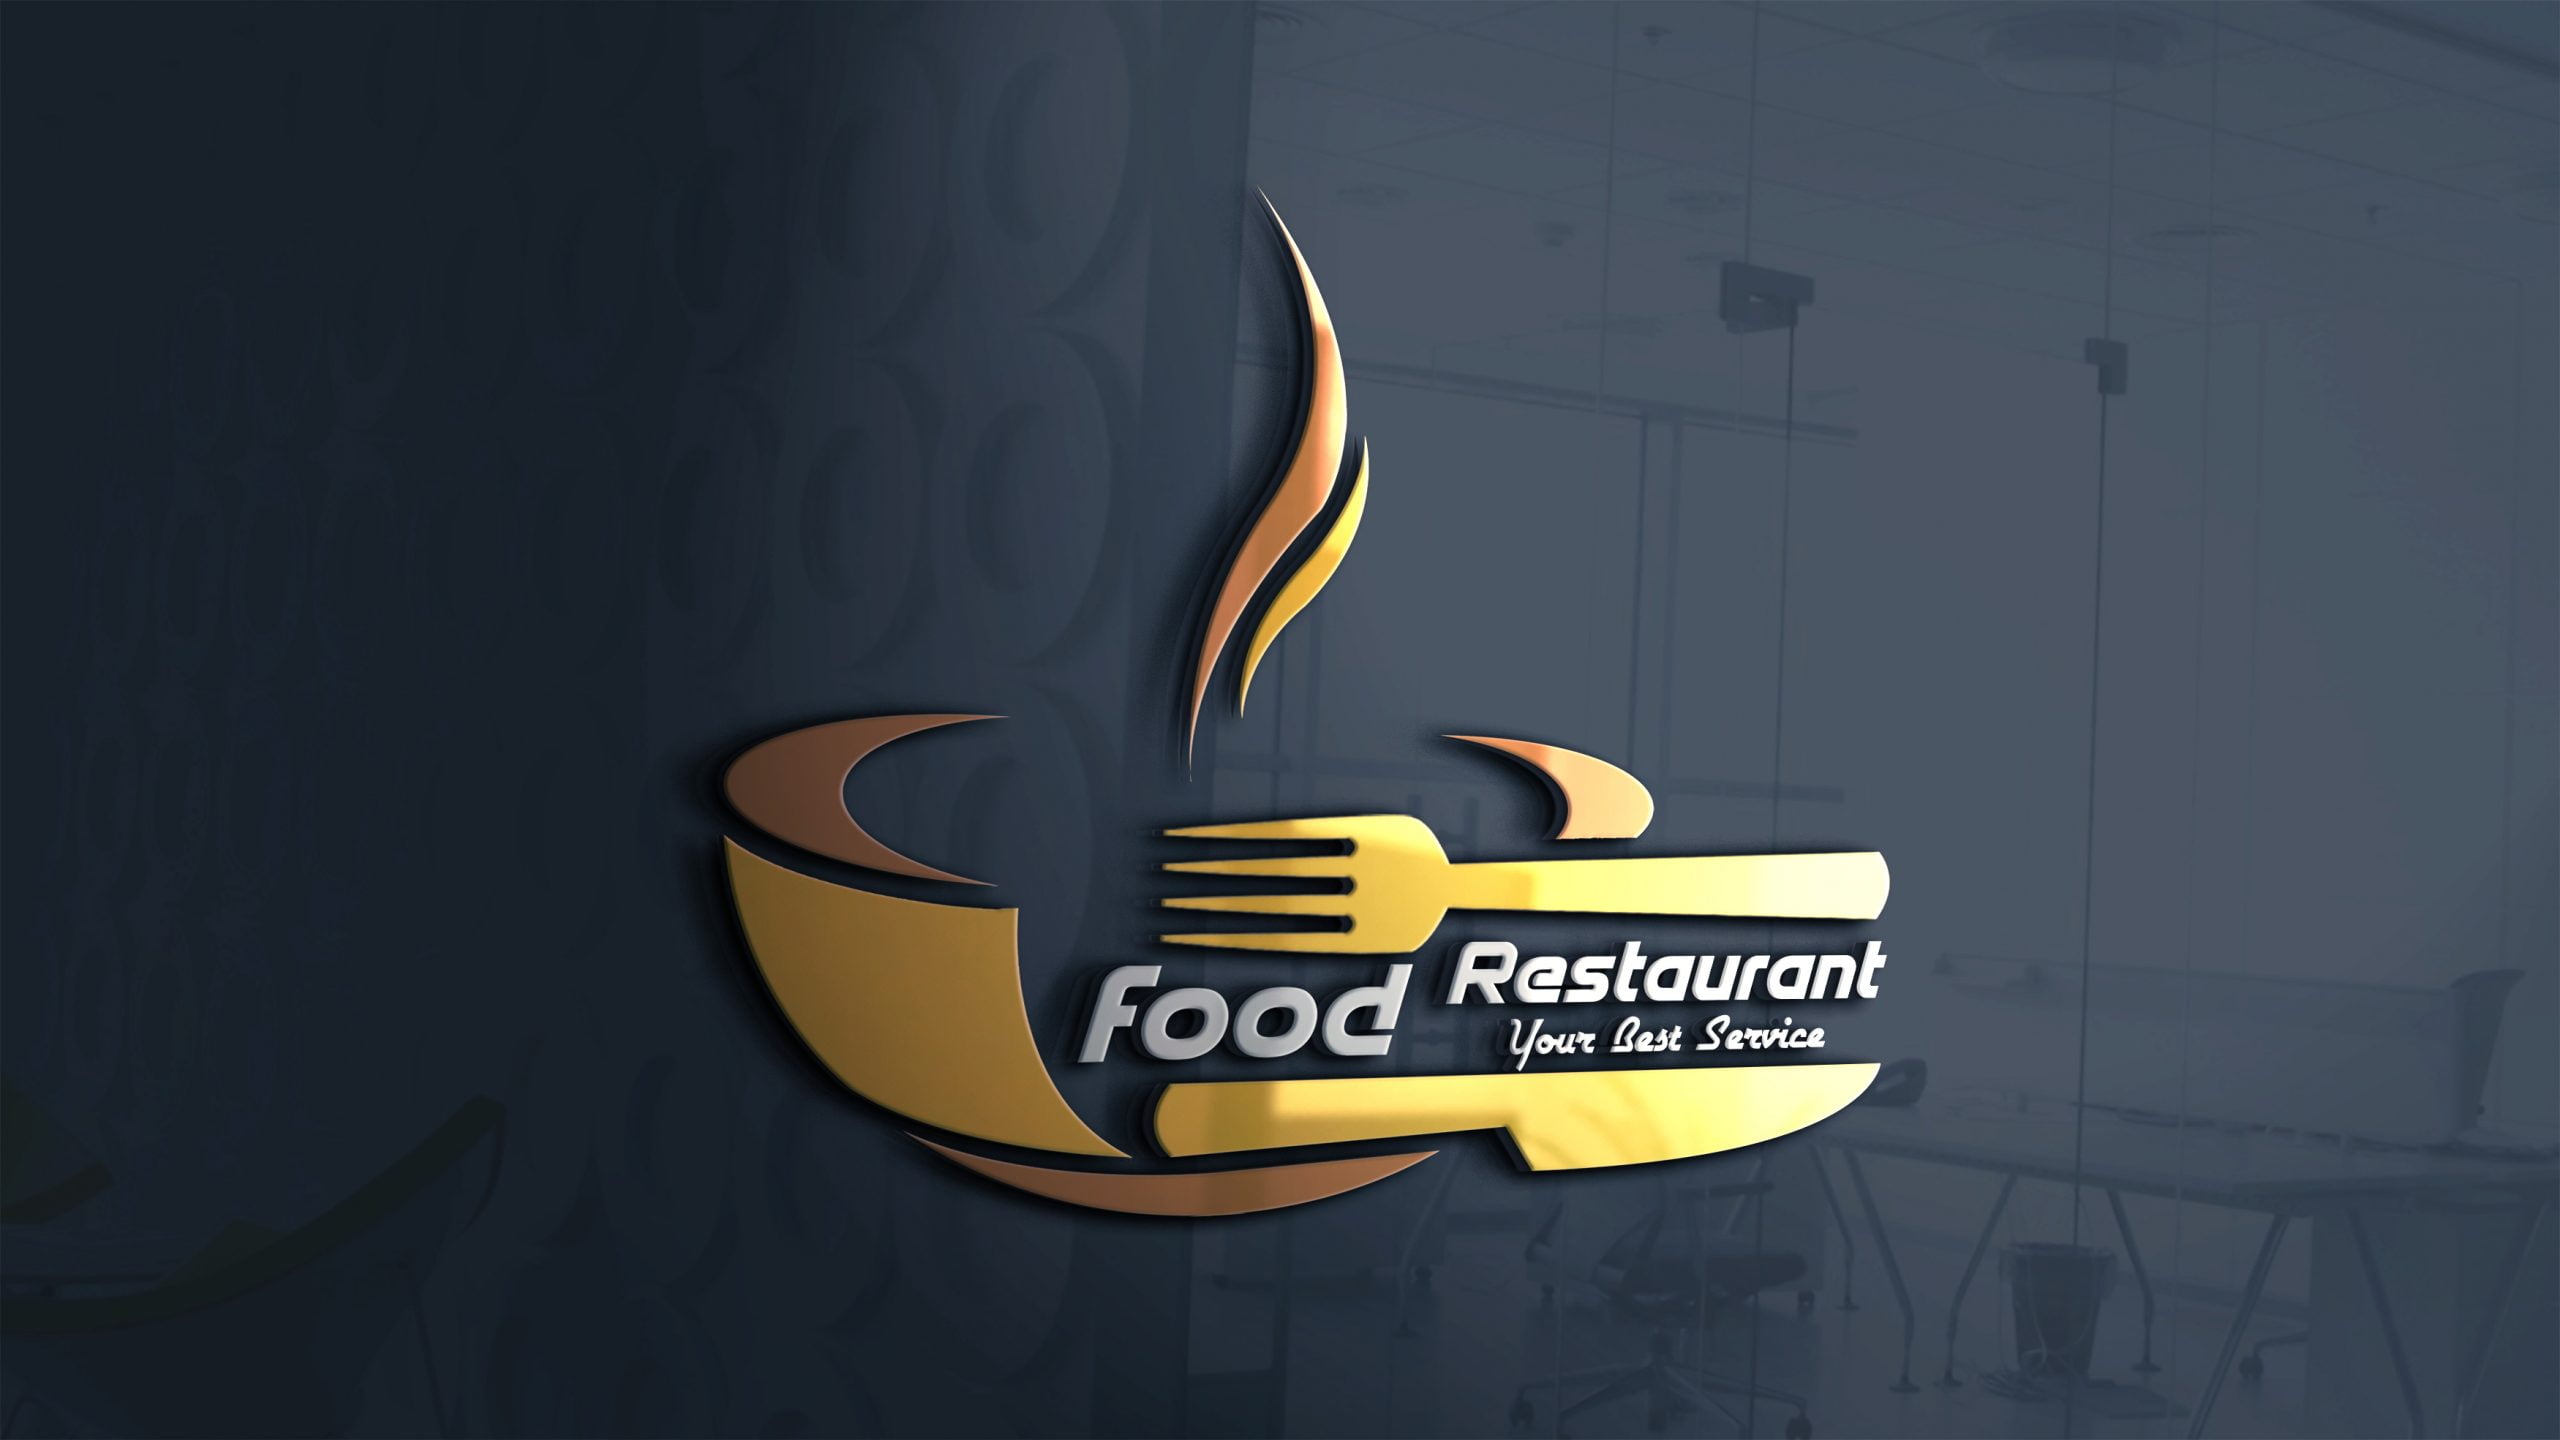 Modern Restaurant Logo Design Free Download